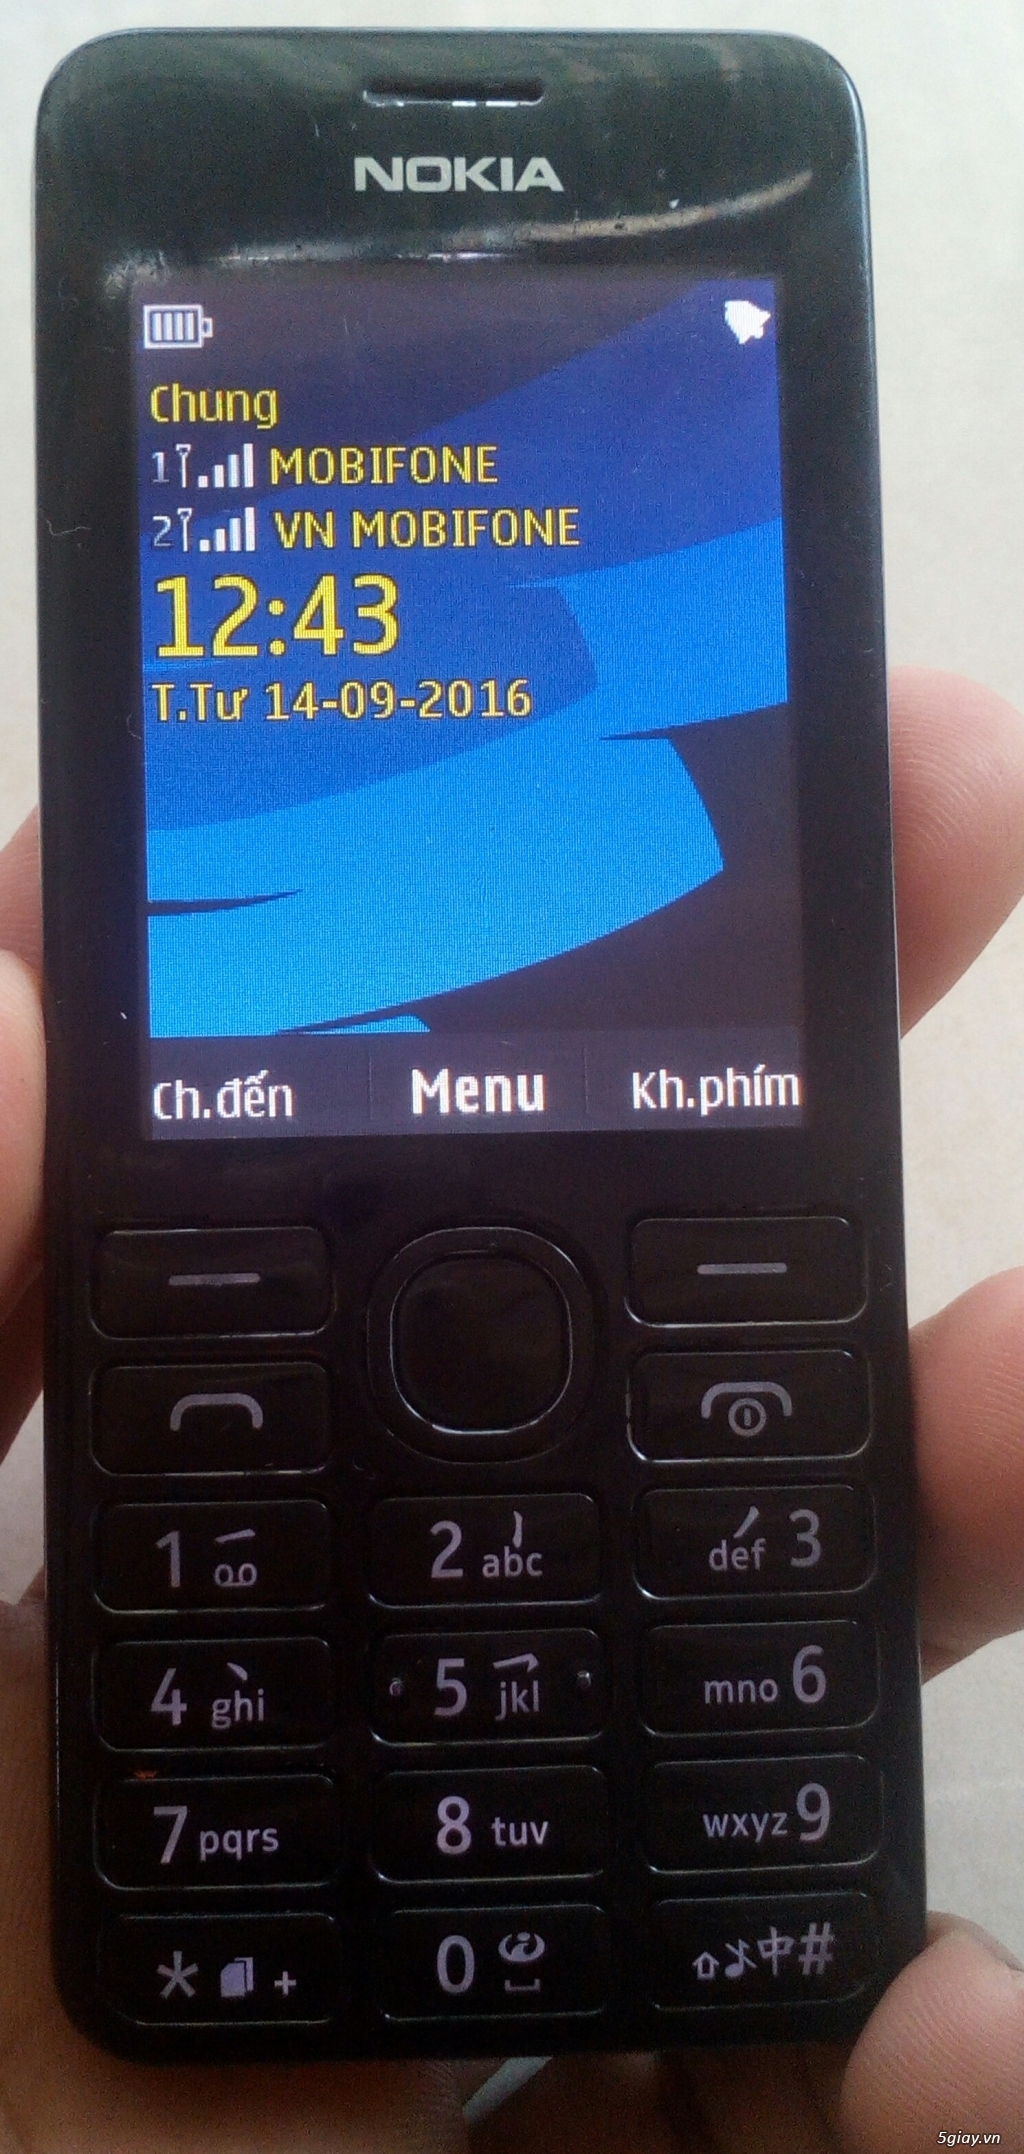 Nokia 225 206 300 301 302 X1 X2 X3 C1 C2 C3 1202 1280 1600 1800 101 106 108 2730 5130 5310 6300 - 1